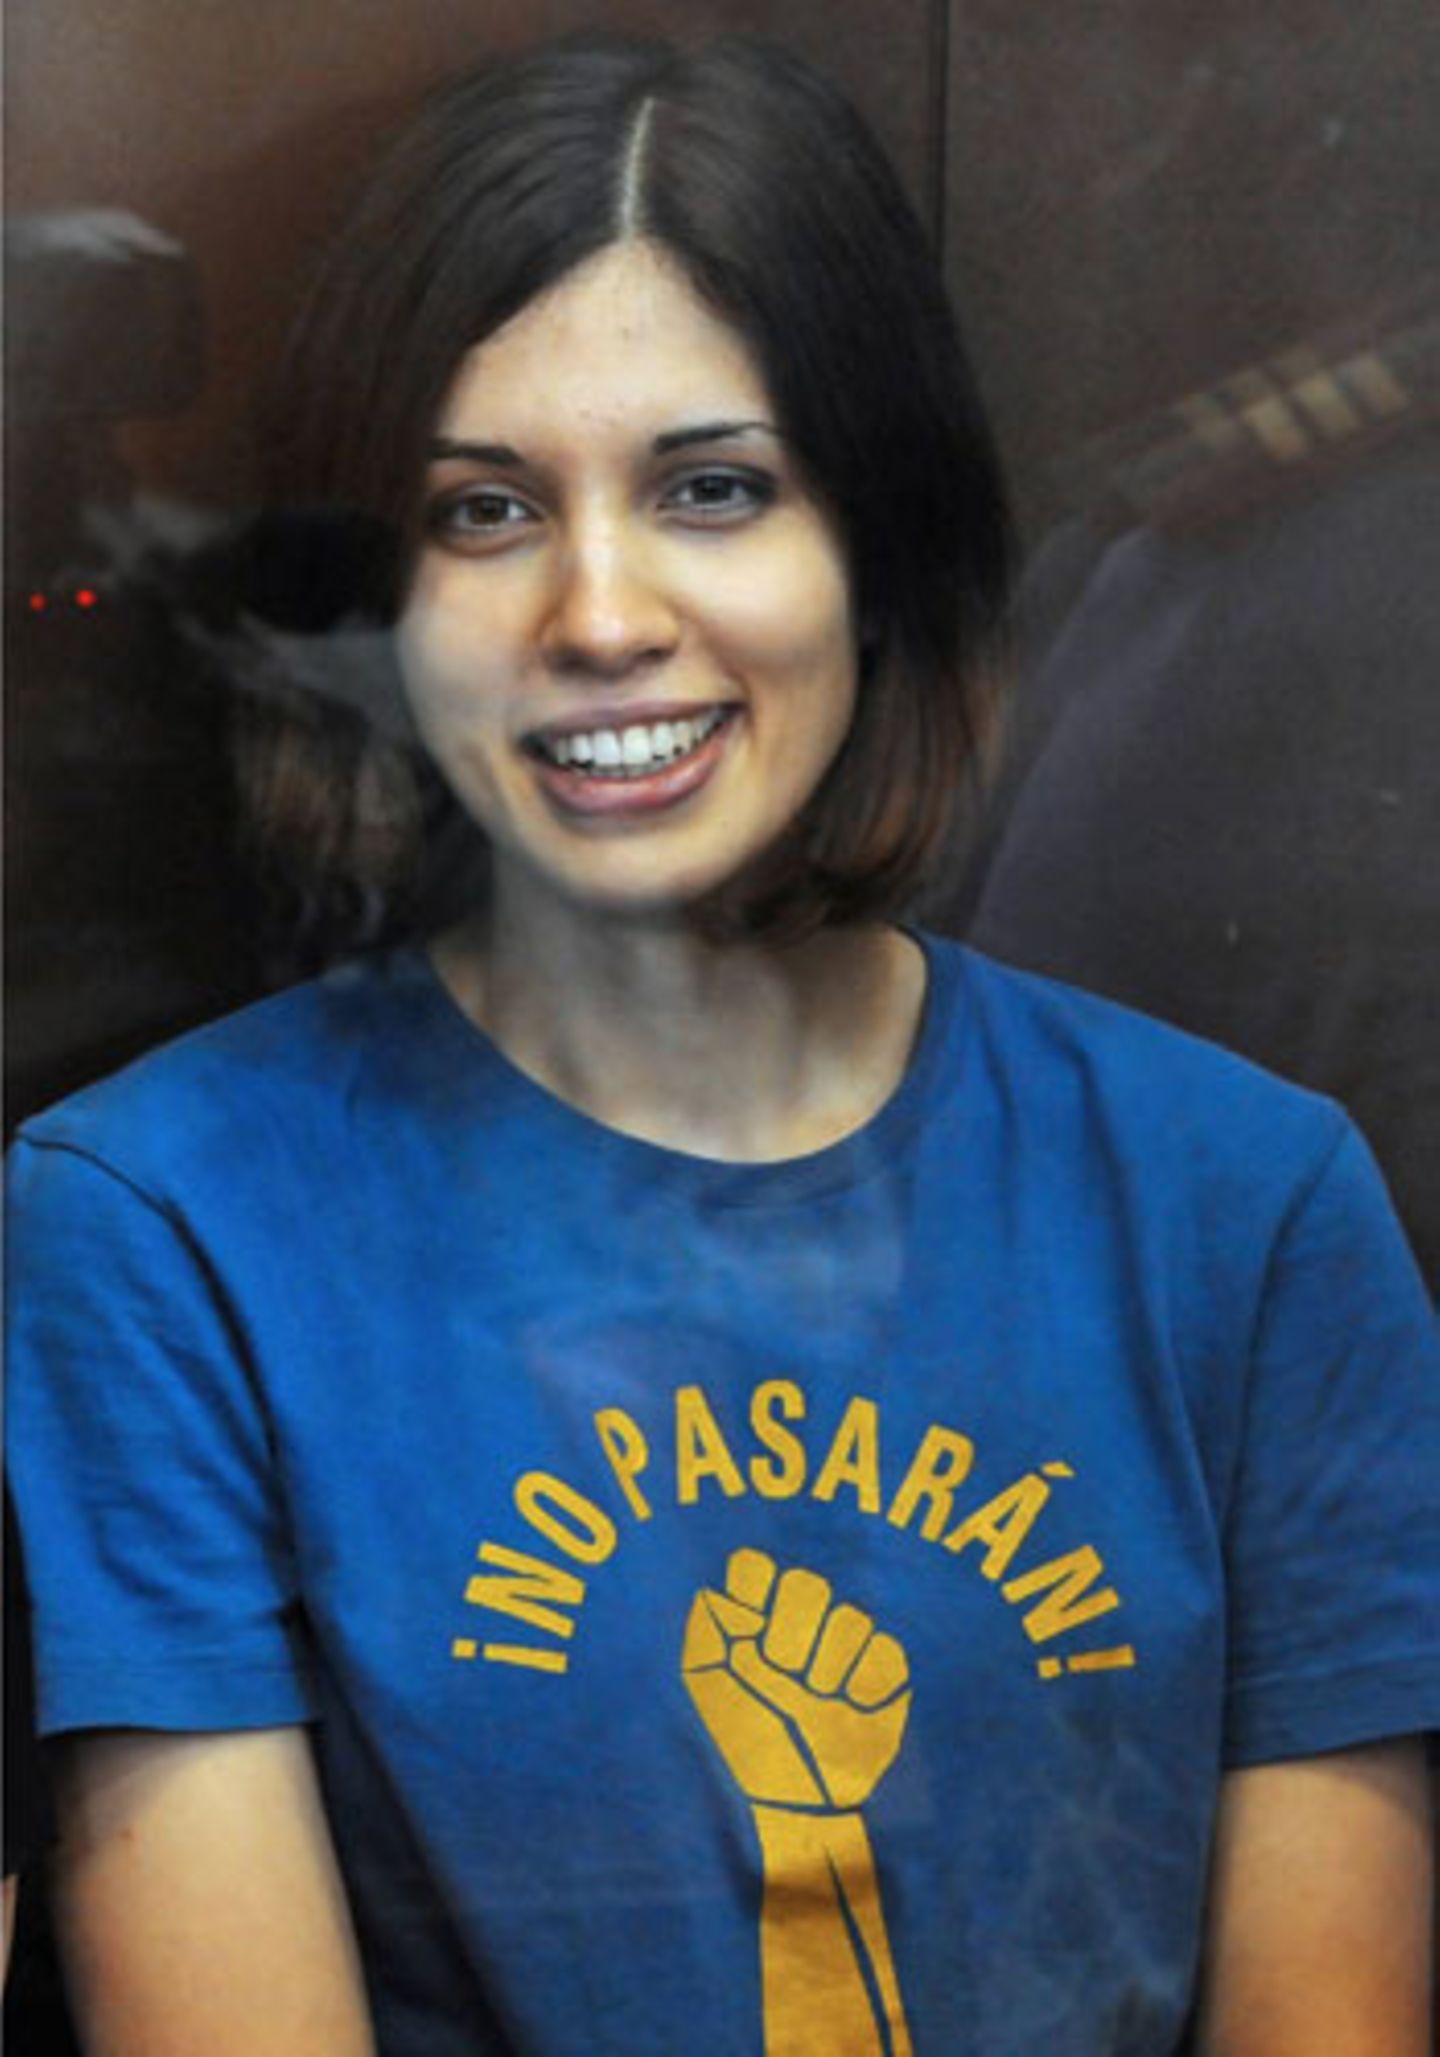 Nadeschda Tolokonnikowa: Mitglied der Protest-Gruppe "Pussy Riot"